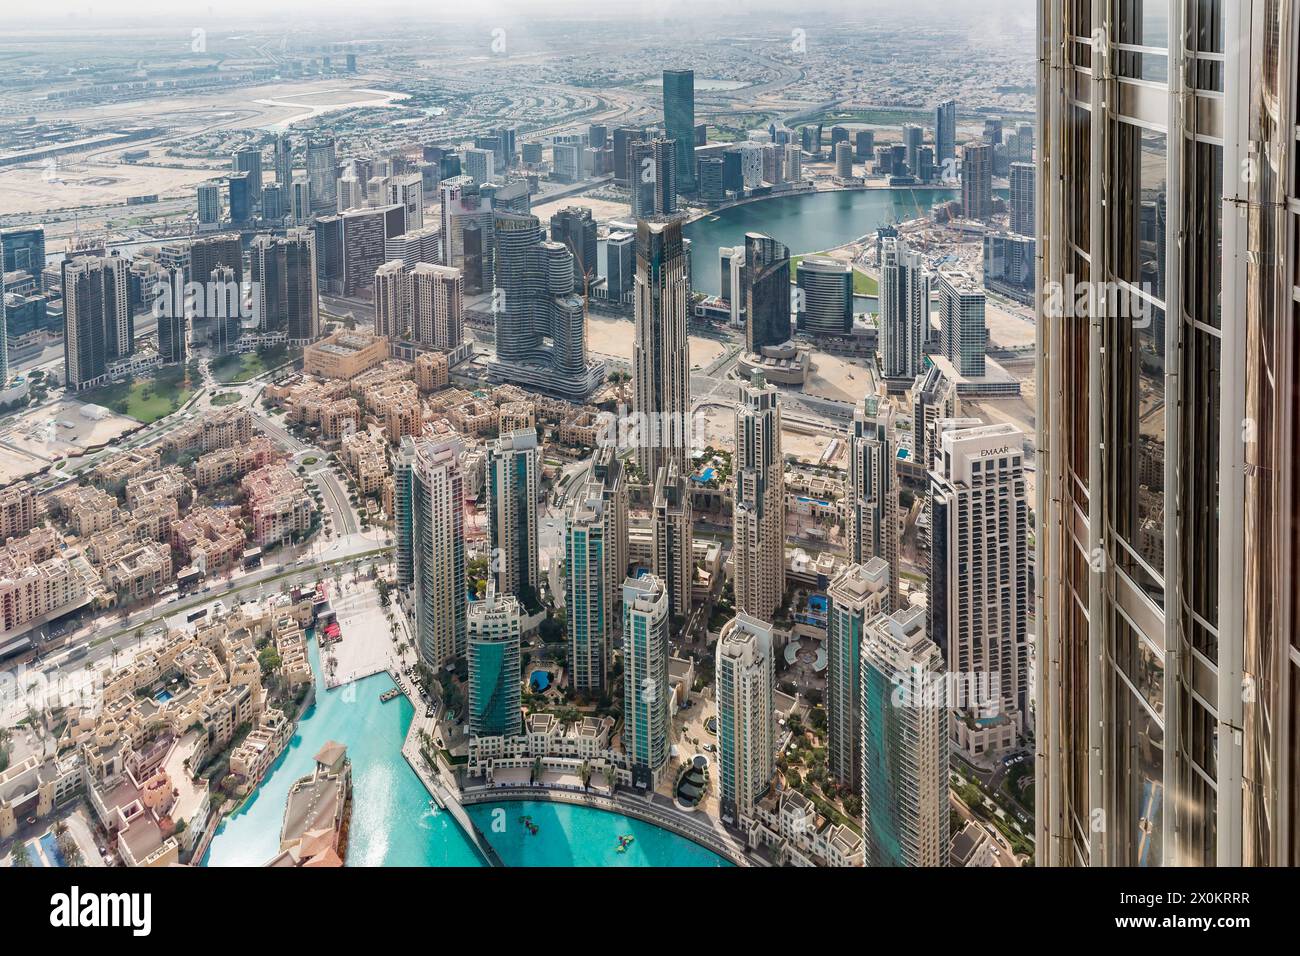 Blick auf die Skylines von der Besucherplattform in The Top im 124. Stock, in einer Höhe von 450 m, Burj Khalifa, das höchste Gebäude der Welt, 830 m hoch, Wolkenkratzer, Skyline, Dubai, Vereinigte Arabische Emirate, Naher Osten, Asien Stockfoto